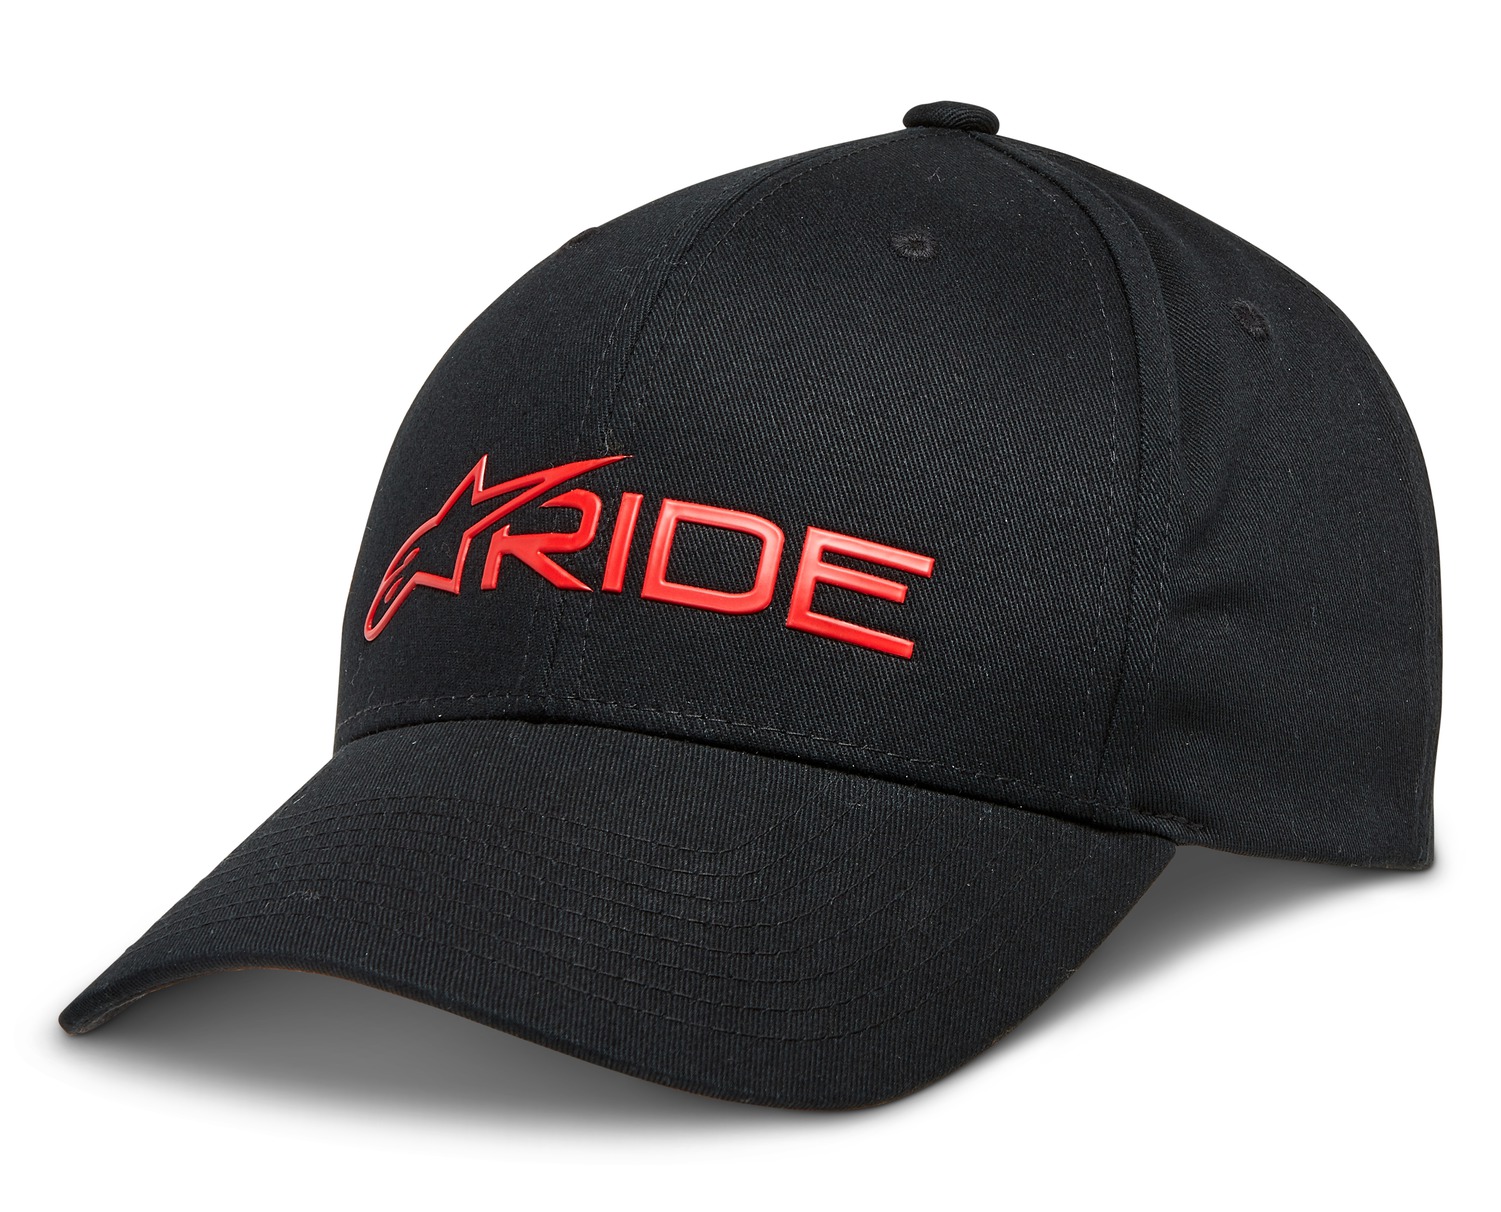 Obrázek produktu kšiltovka RIDE 3.0, ALPINESTARS (černá/červená) 1232-81030-1030-TU